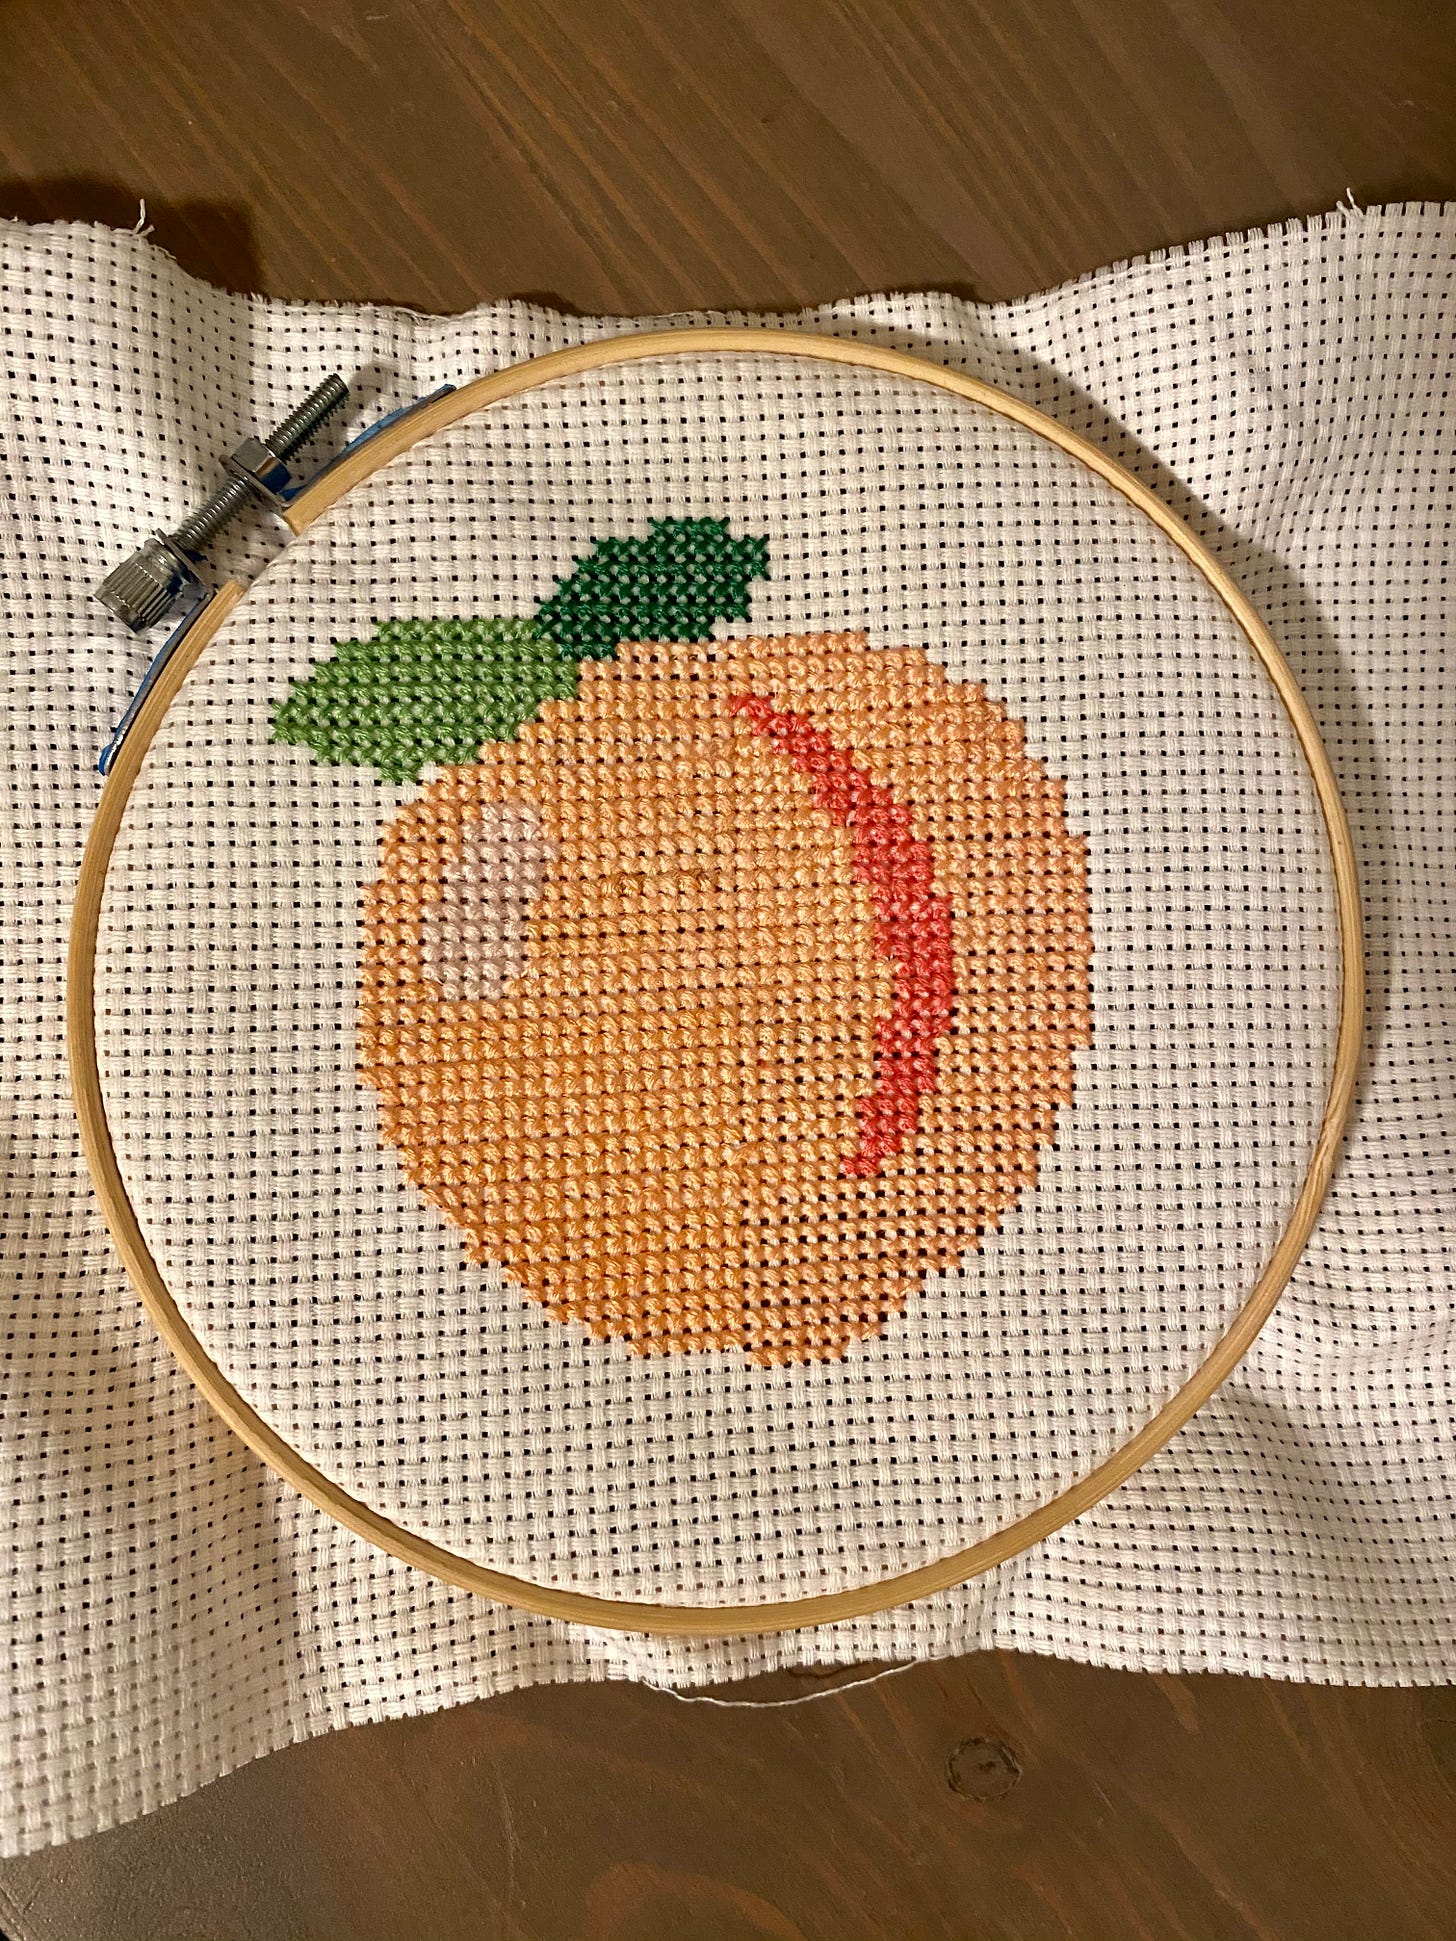 Cross-stitch of the peach emoji